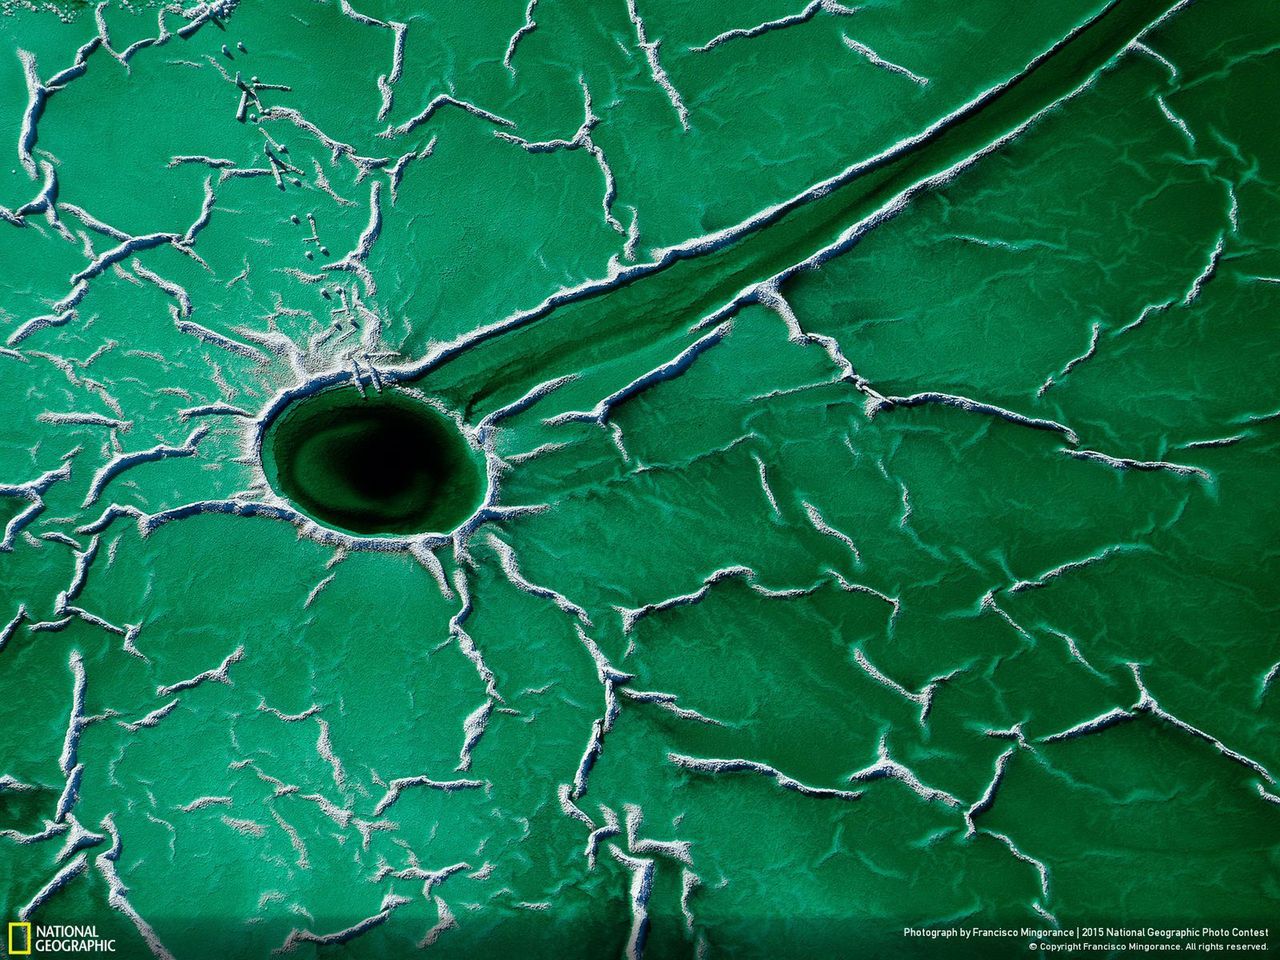 Kolejne zwycięskie zdjęcie (kat. Miejsca) pod tytułem „Asteroid” przedstawia fotografię rzut na Cardenas w Hiszpanii z lotu ptaka. Francisco Mingorance sfotografował pokłady fosfogipsu tworzące niesamowitą strukturę na powierzchni ziemi. Jest on fotografem przyrodniczym zajmującym się ochroną środowiska. Zielona woda z białymi przebitkami fosfogipsu przypominały mu miejsce po uderzeniu asteroidy.